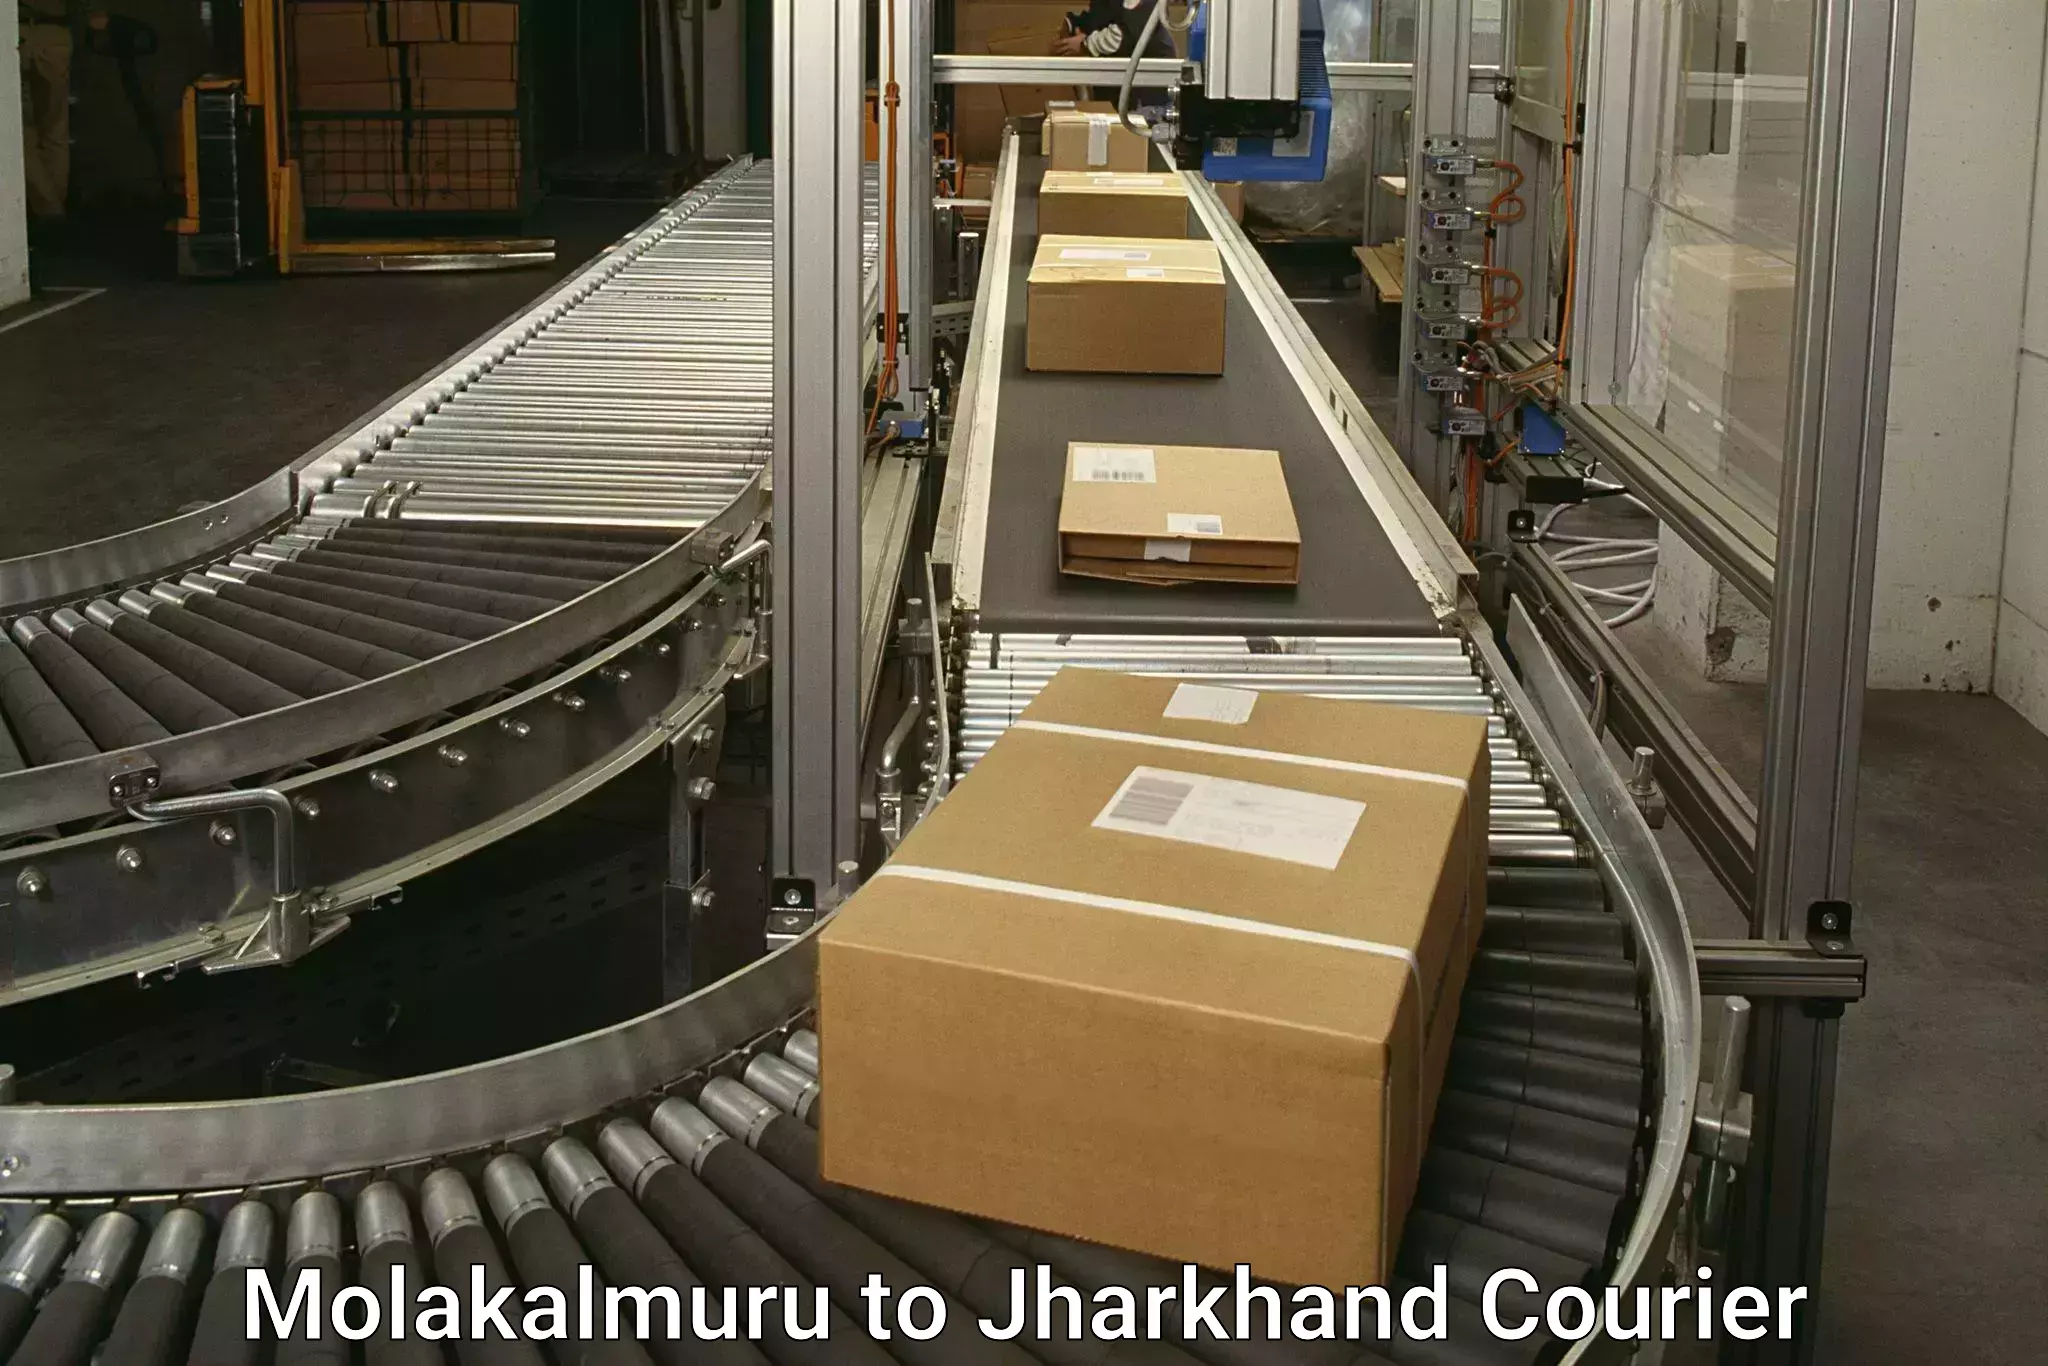 Digital courier platforms Molakalmuru to Kedla